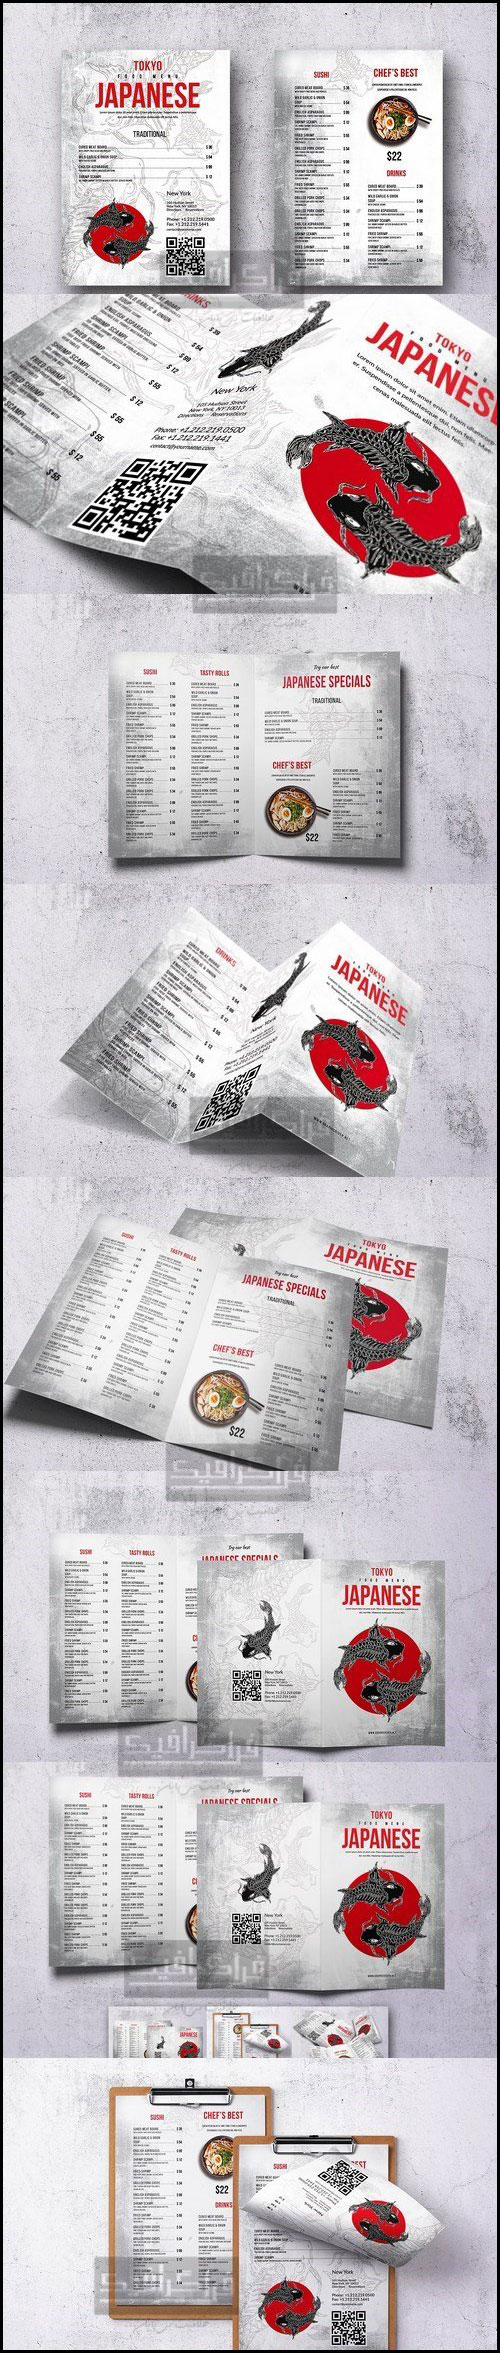 دانلود فایل لایه باز فتوشاپ منو های رستوران ژاپنی